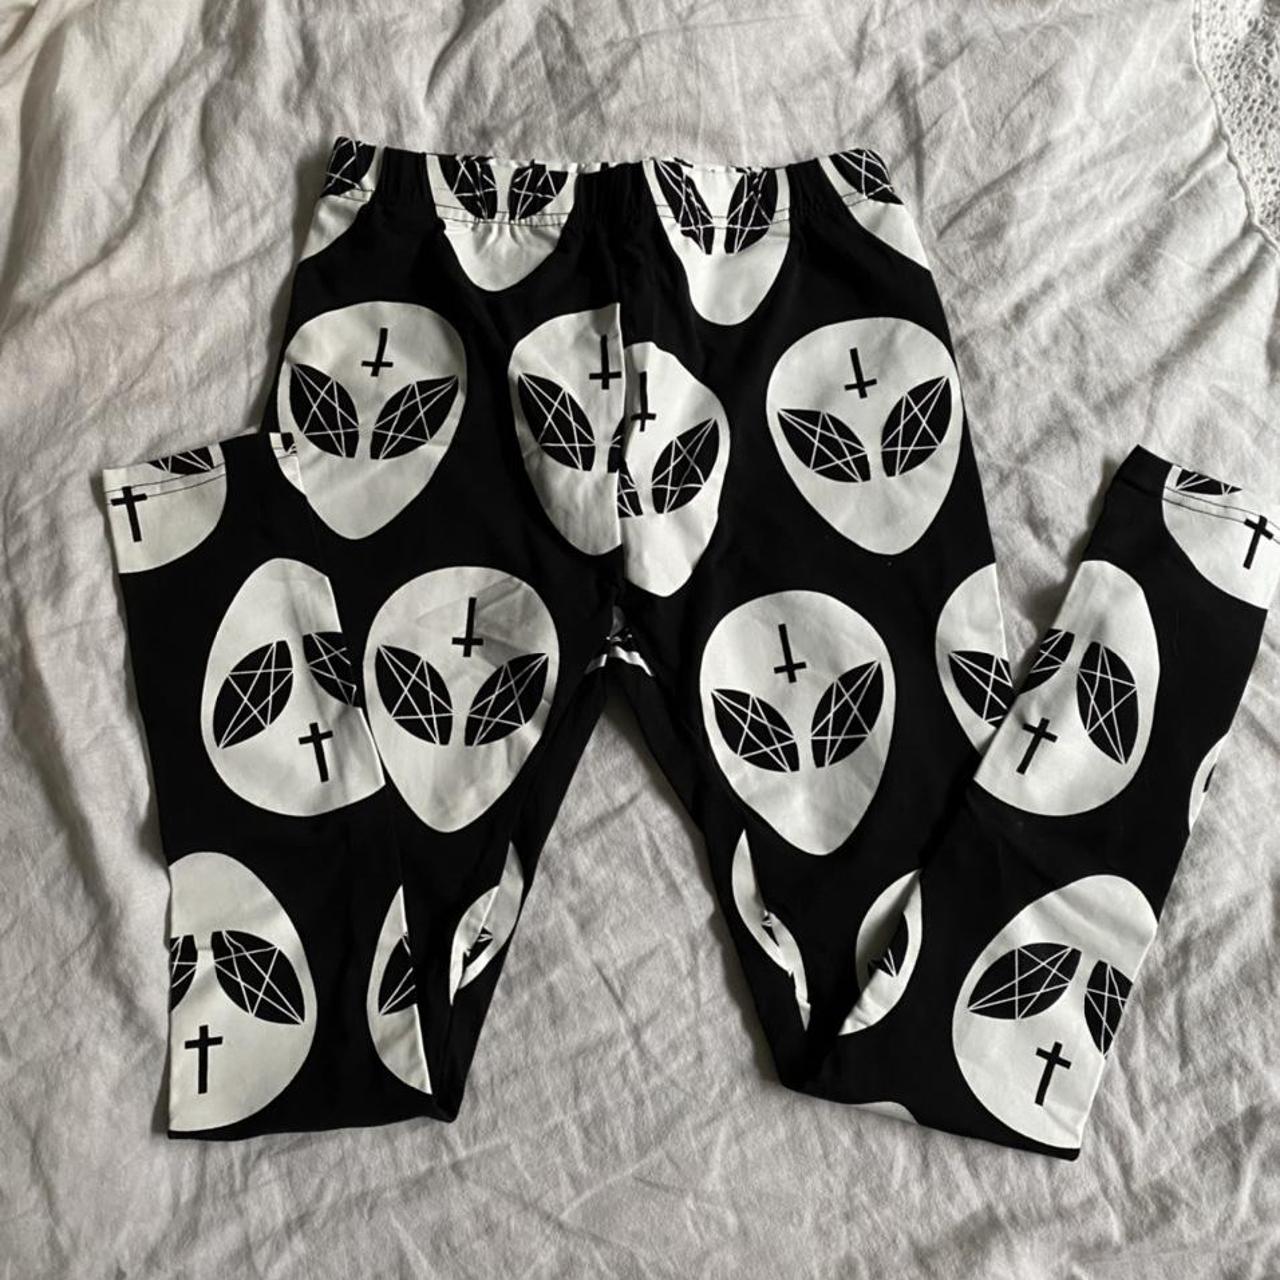 Product Image 1 - KillStar alien leggings. Size S.